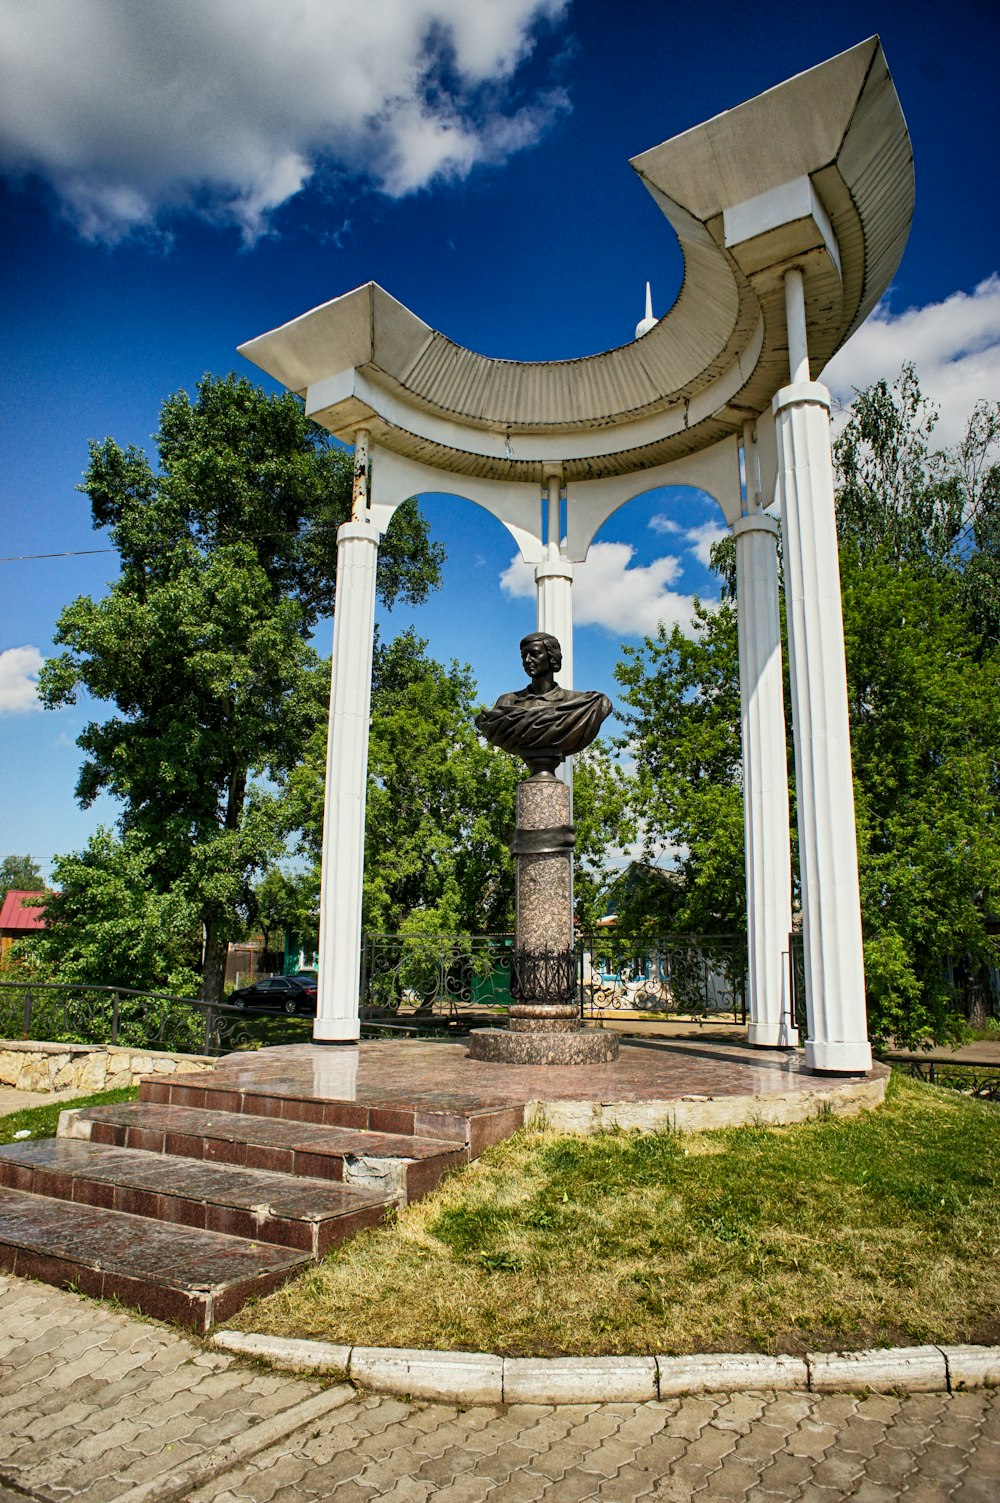 Una estatua de un hombre está en medio de un parque